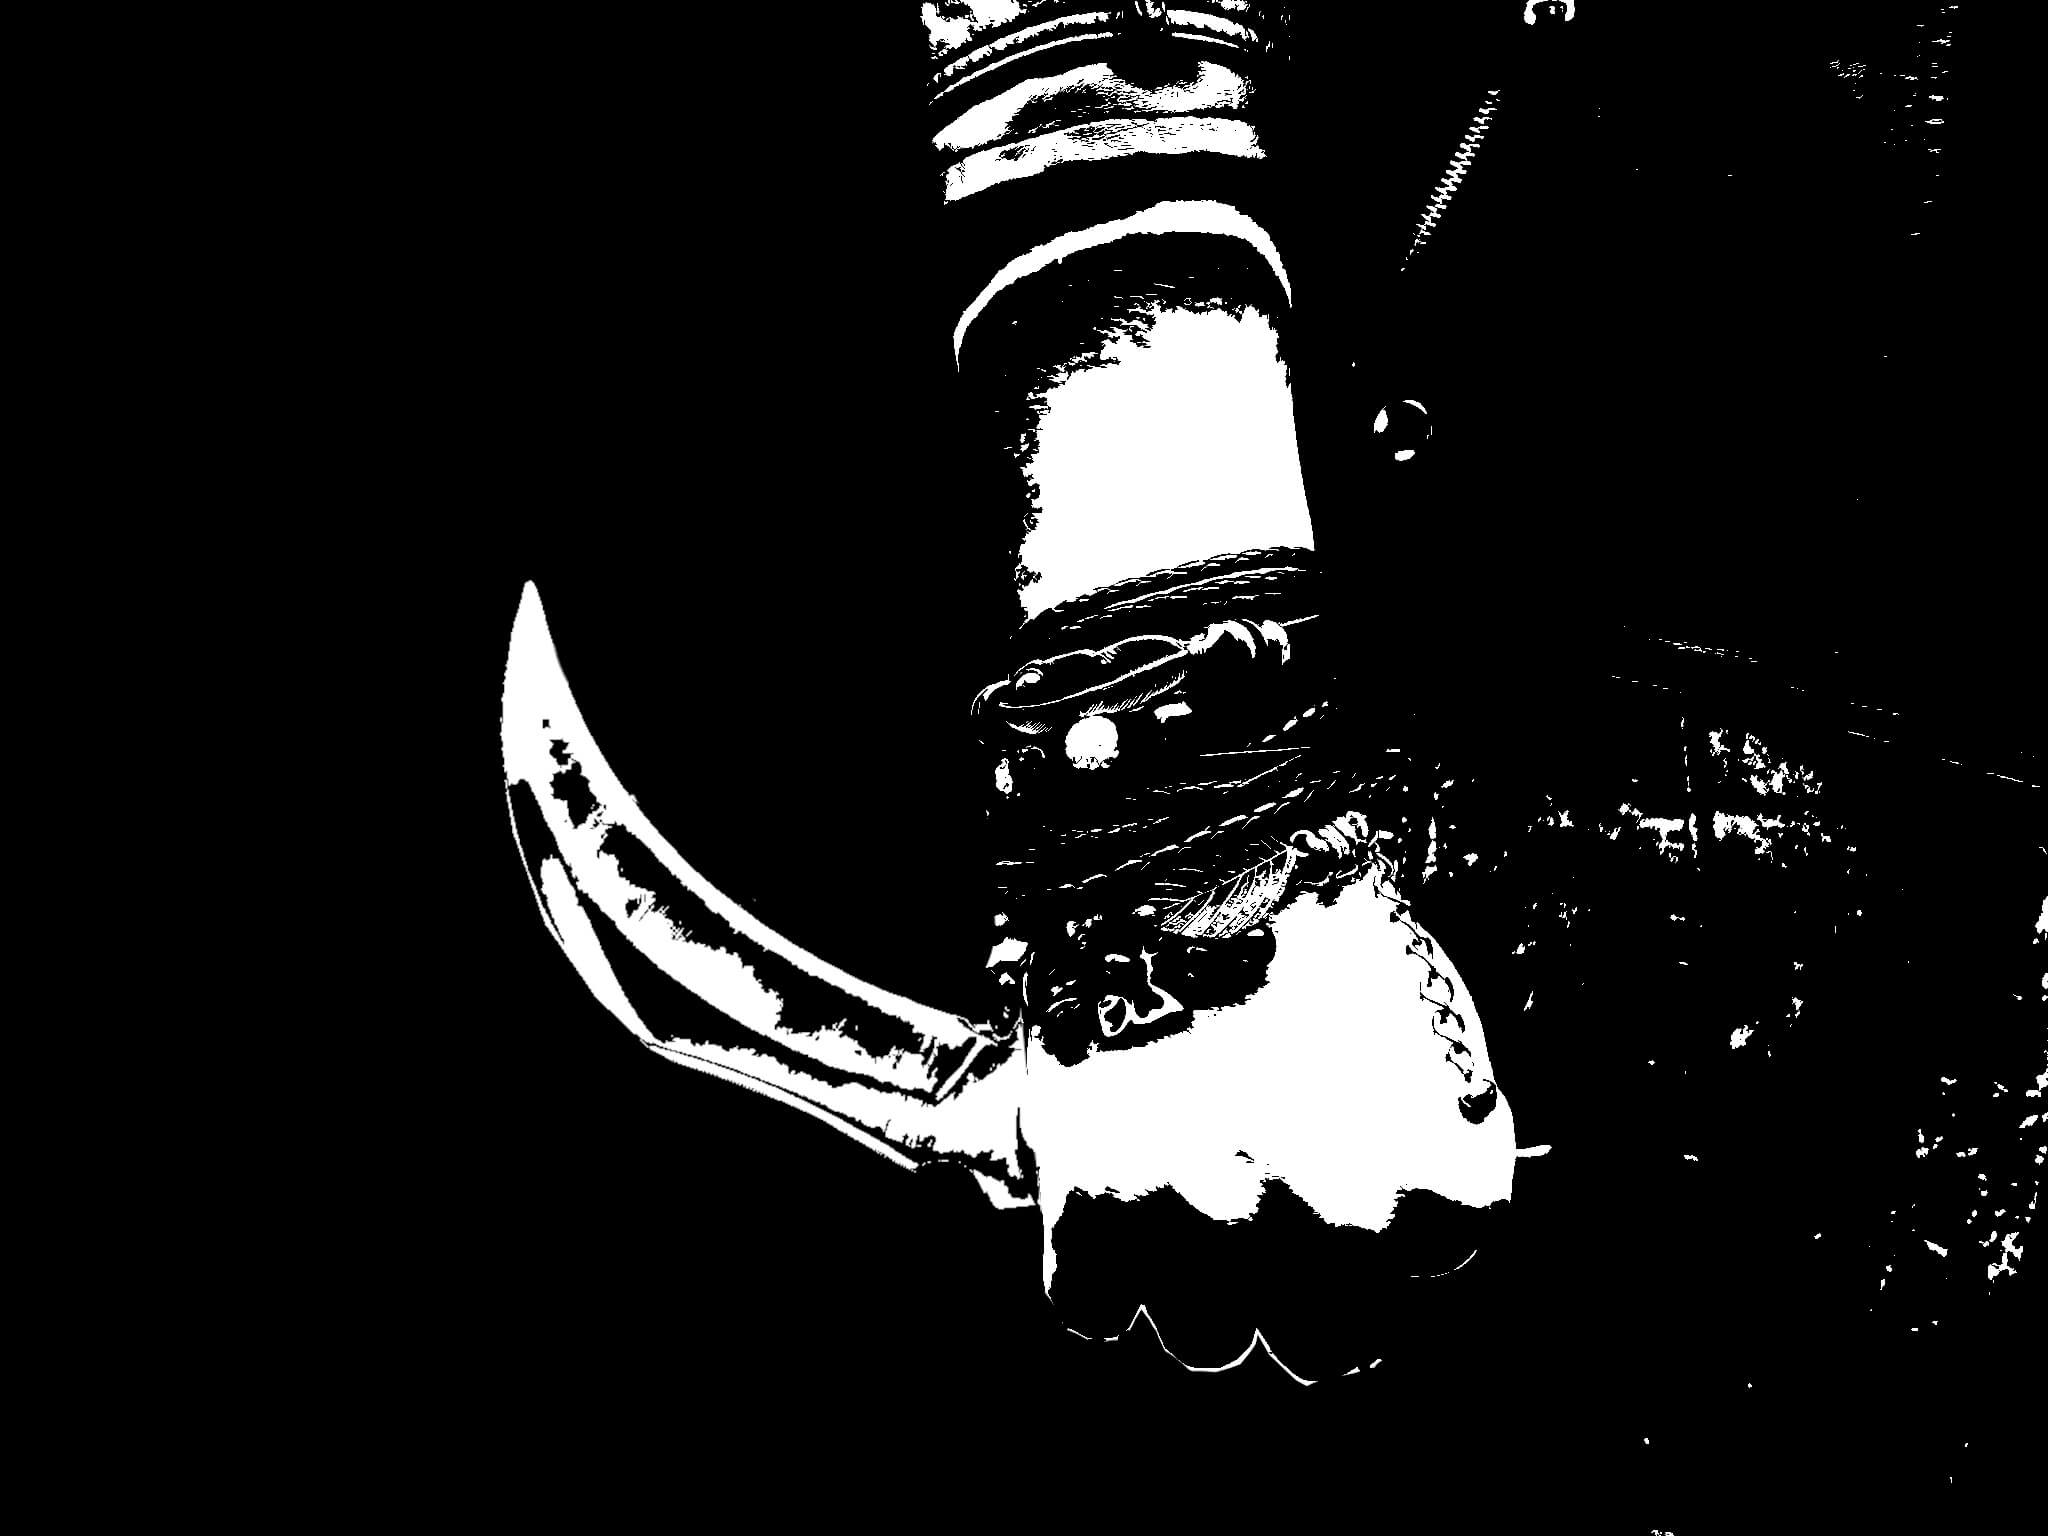 Image en aplats de noir et blanc, une main tenant un couteau à lame courbée le long du corps